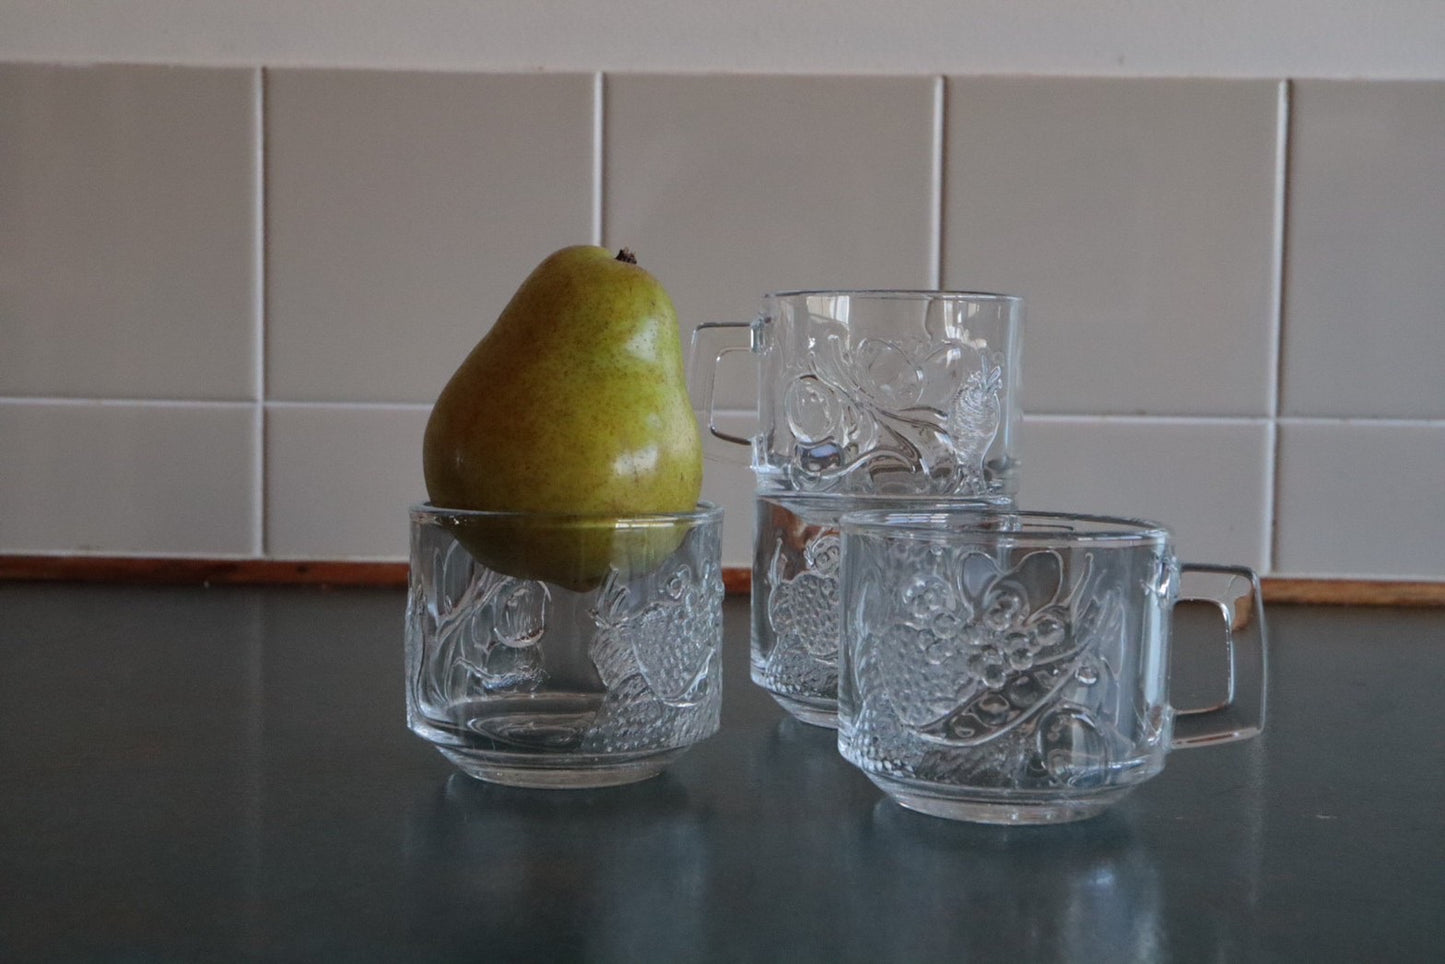 Fruit glass mug